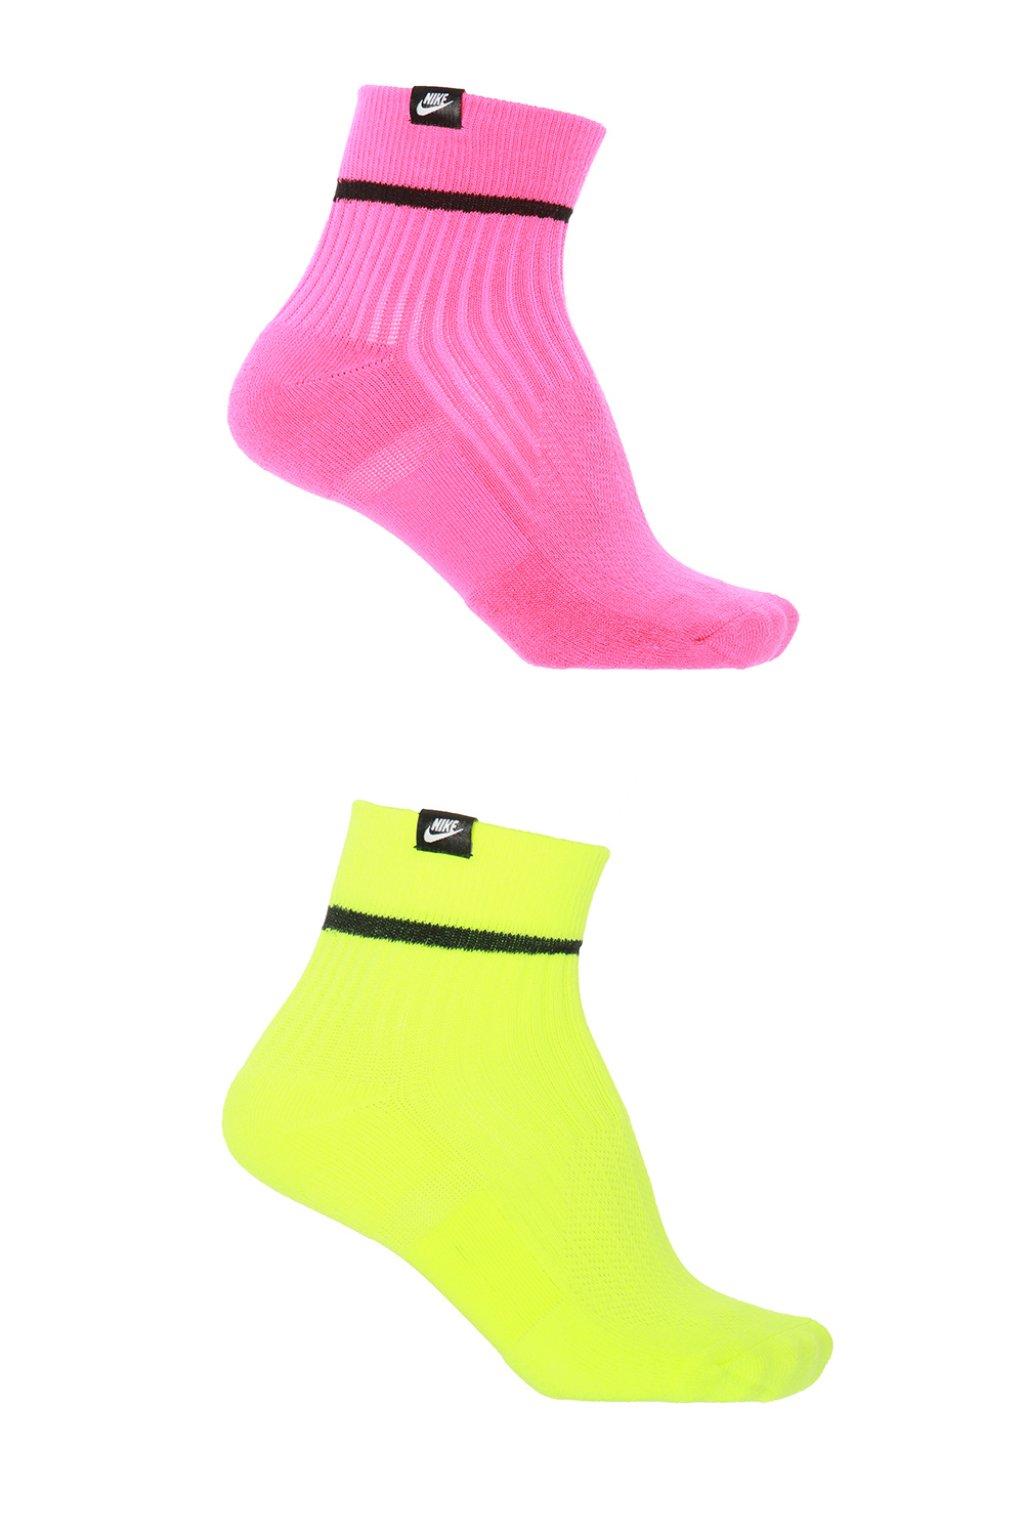 Nike Synthetic Hi-vis Neon Socks for Men - Lyst